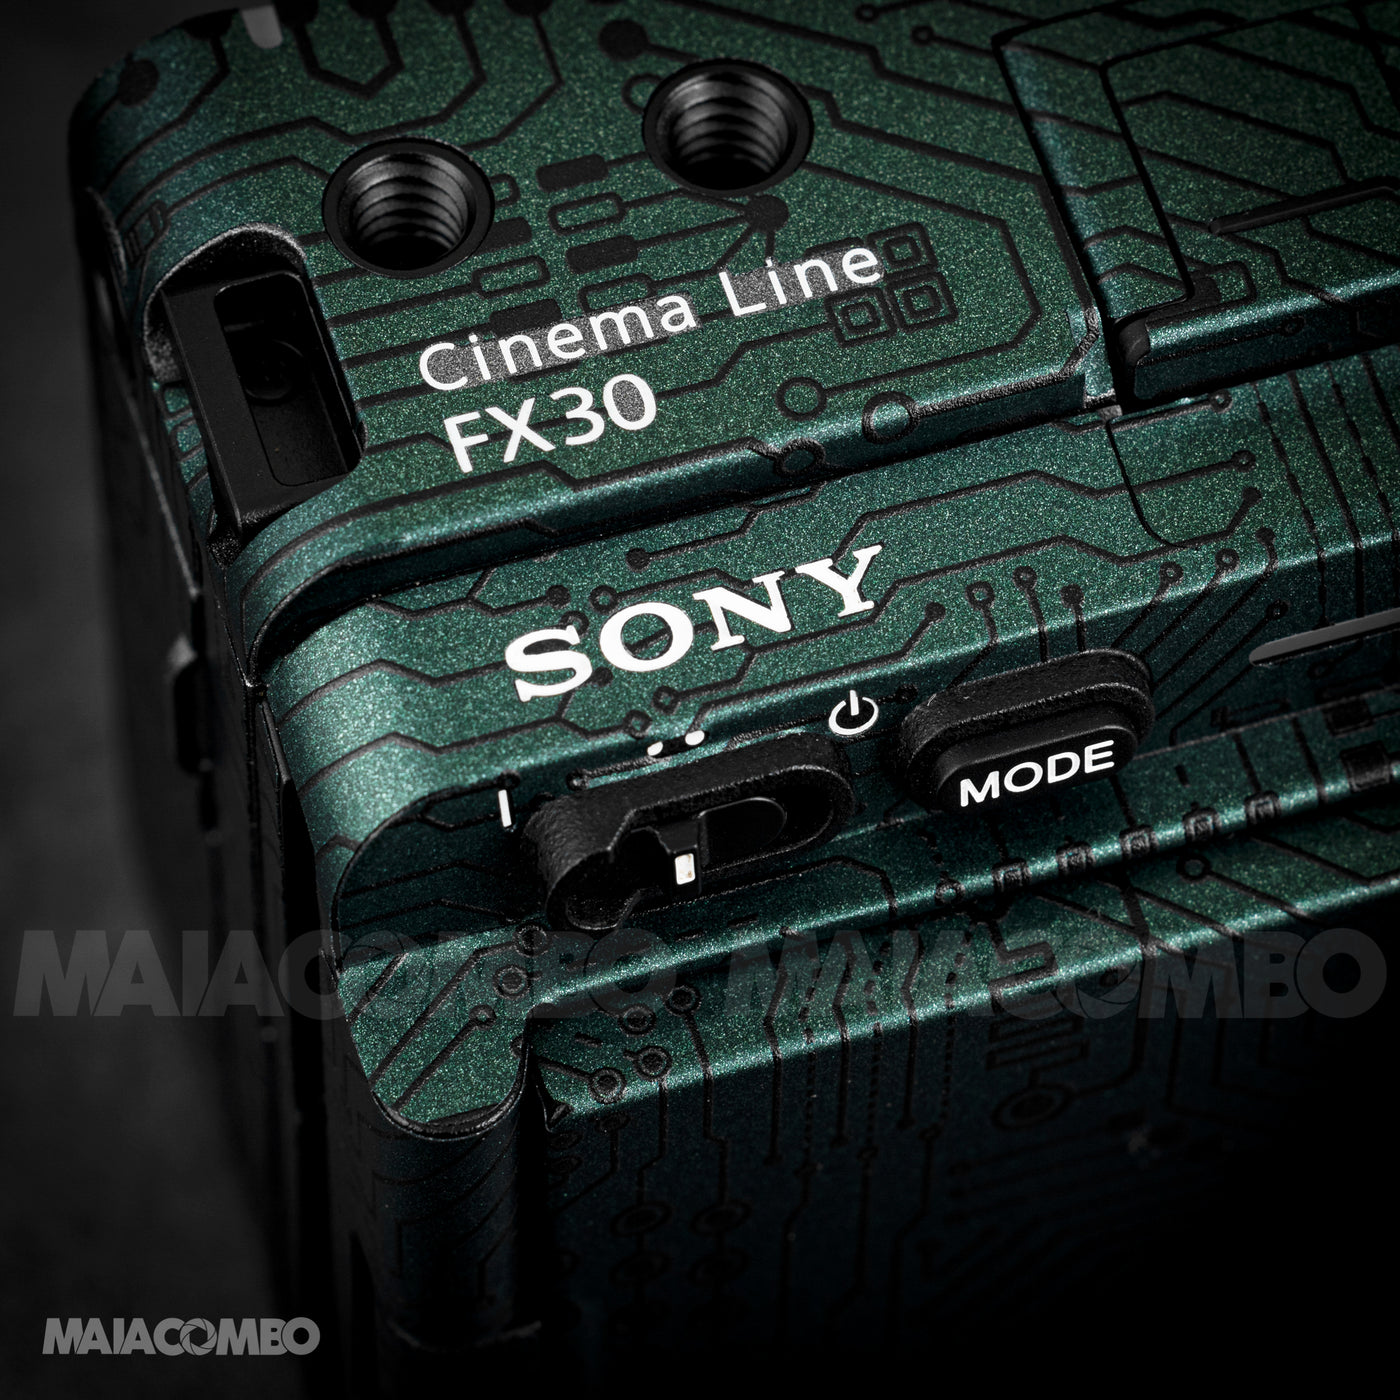 Sony FX30 Camera Skin